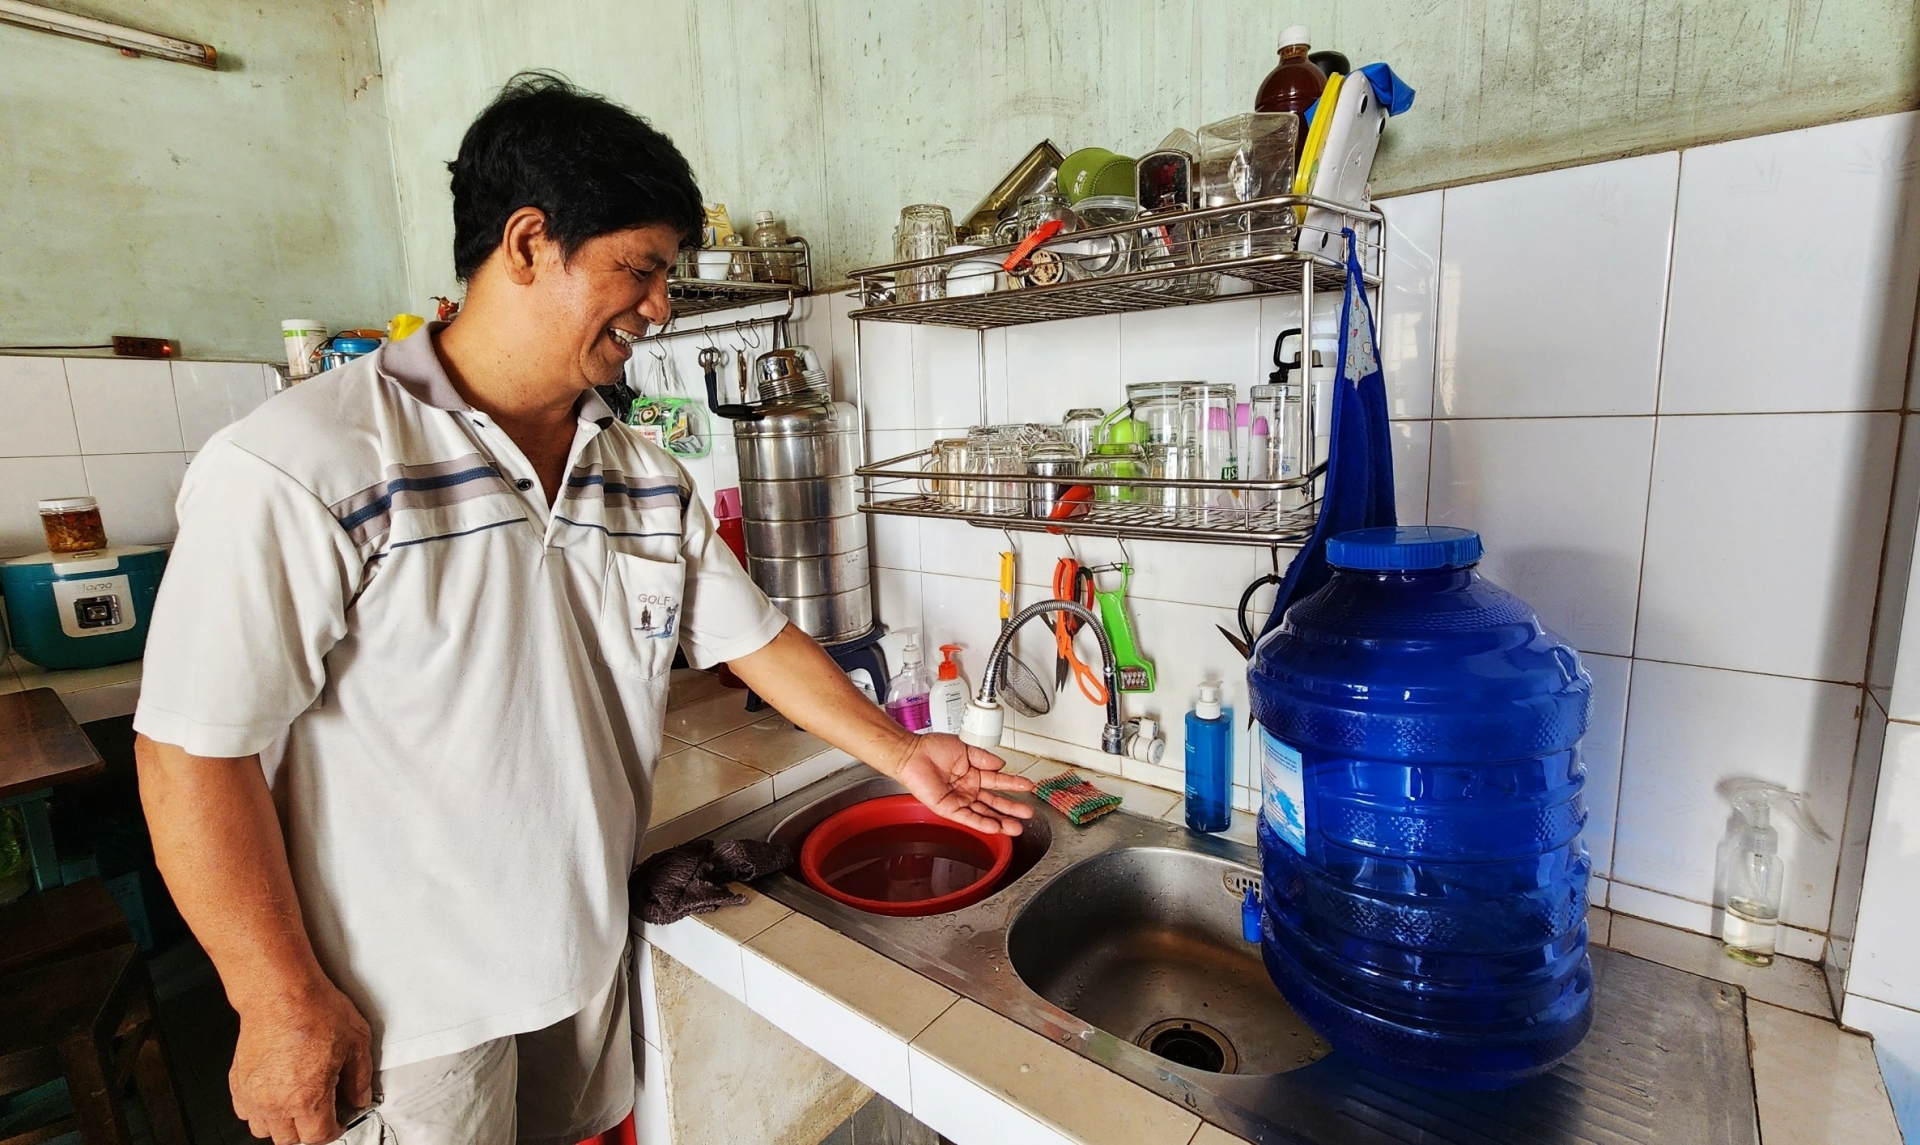 Hiện tại hàng trăm hộ dân các tổ dân phố 7 và 9 phường Lộc Sơn, TP Bảo Lộc đang thiếu nguồn nước sinh hoạt trầm trọng